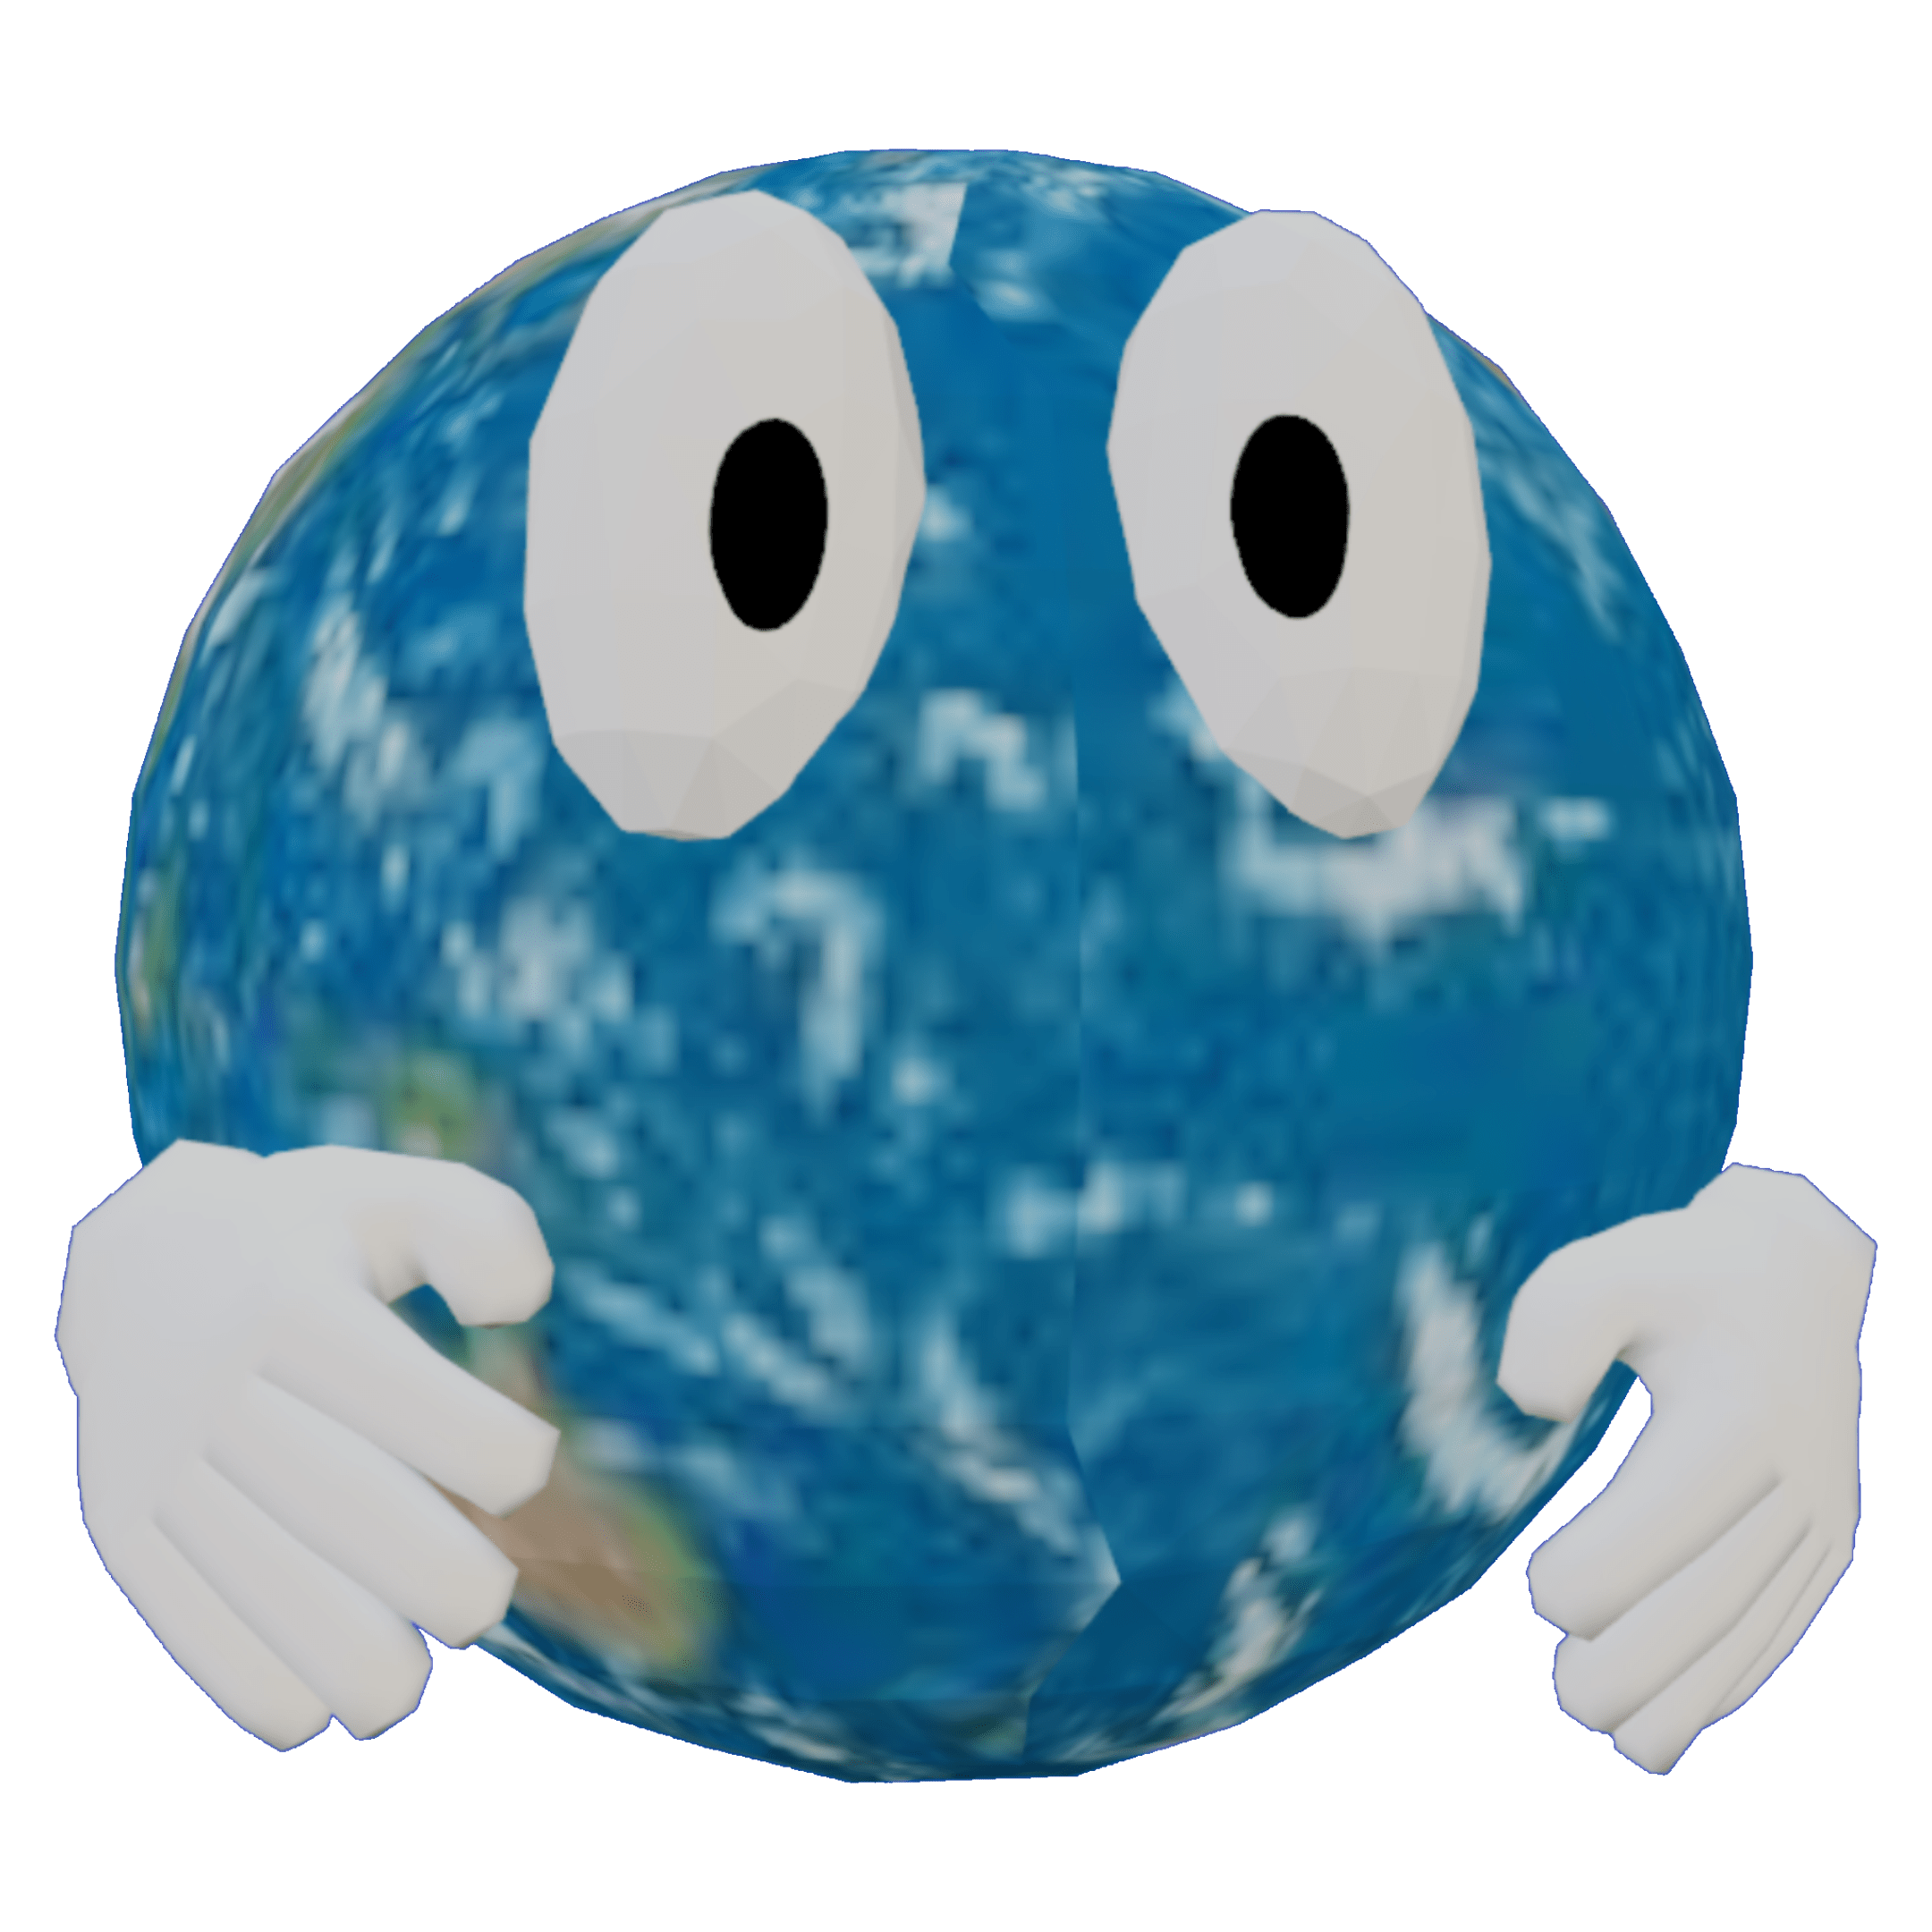 3D globe